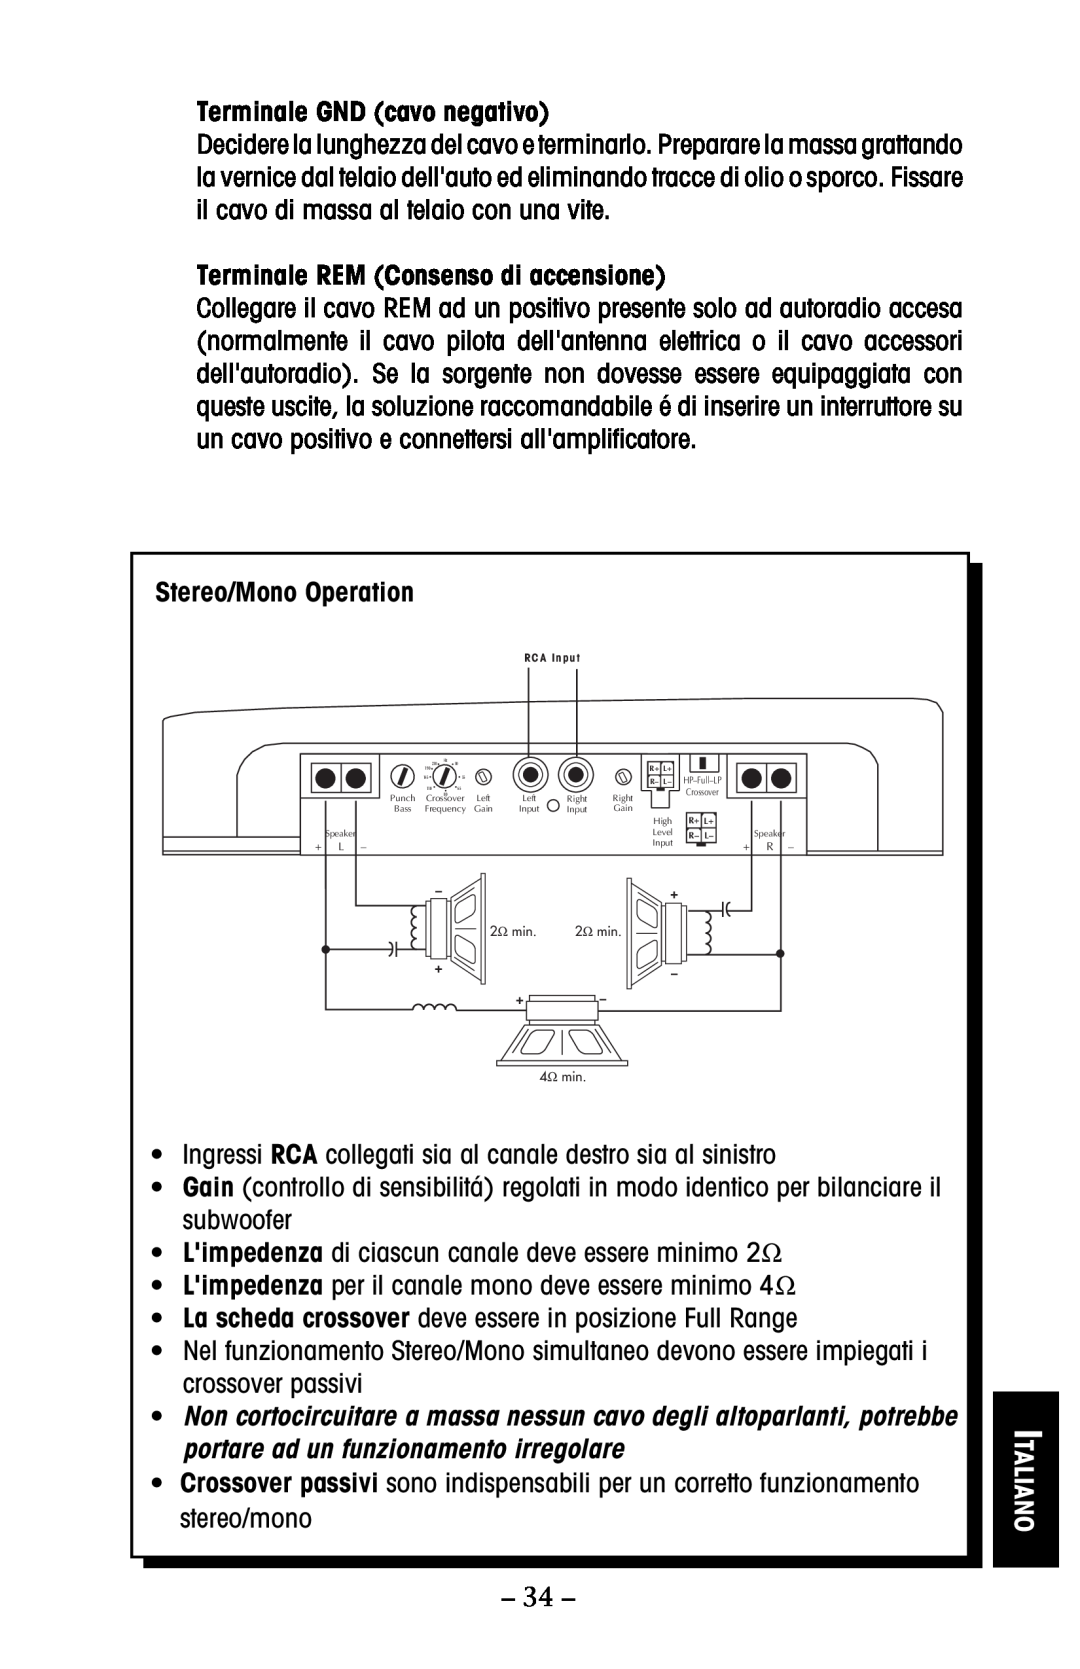 Rockford Fosgate 150 Terminale GND cavo negativo, Terminale REM Consenso di accensione, Italiano, Stereo/Mono Operation 